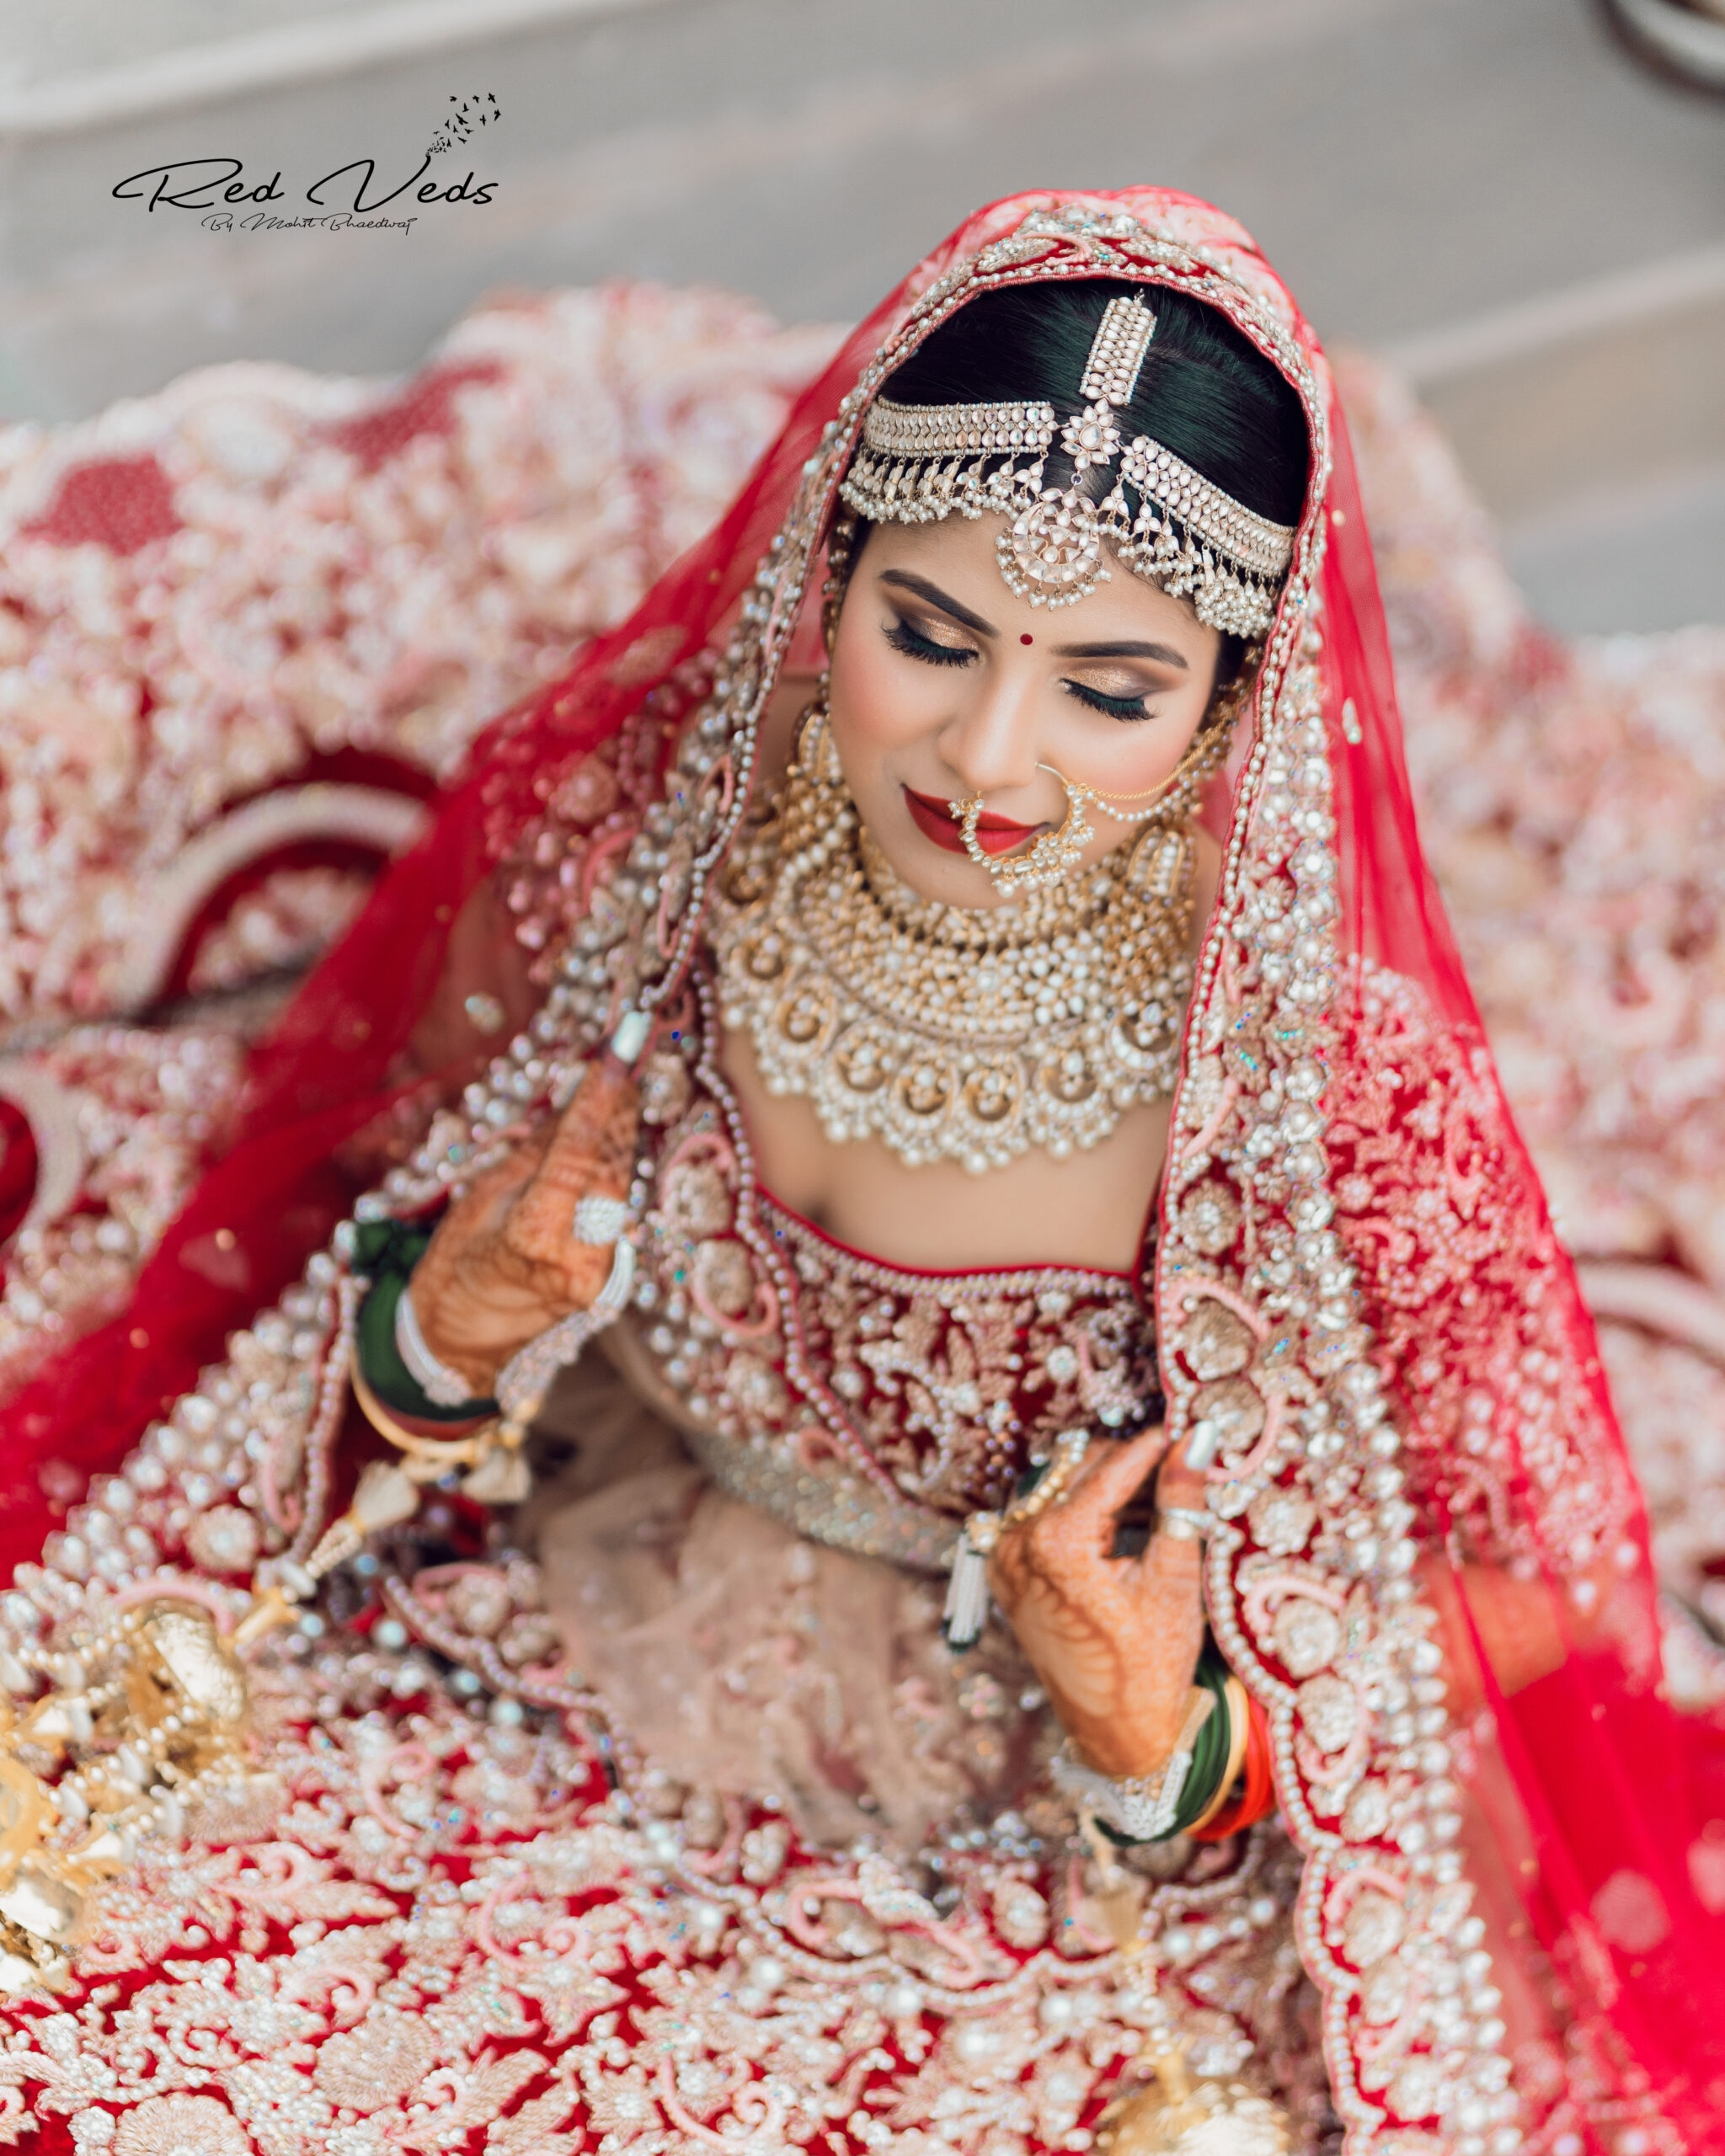 Bridal photoshoot poses || Bridal photography ideas - Fashion Friendly -  YouTube